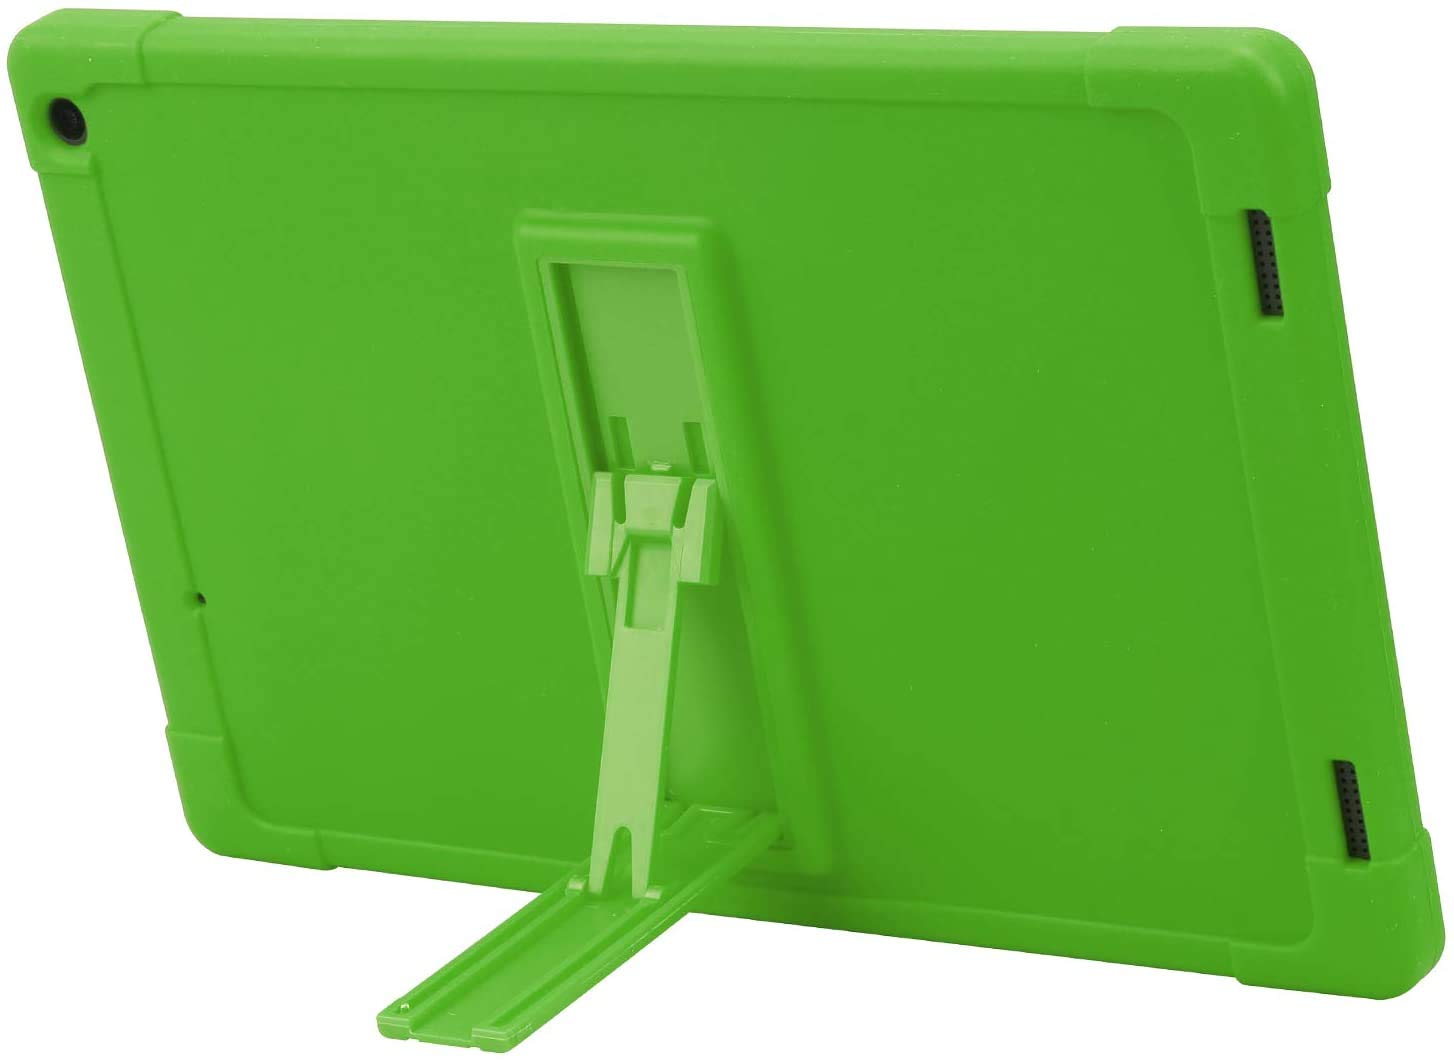 Tablet-Schutzhülle kompatibel mit Coopers 10,1 Zoll Tablet, [Ständer] [Hülle für Kinder] Schutzhülle für YQSAVIOR/Coopers Tablet CP10 (grün)